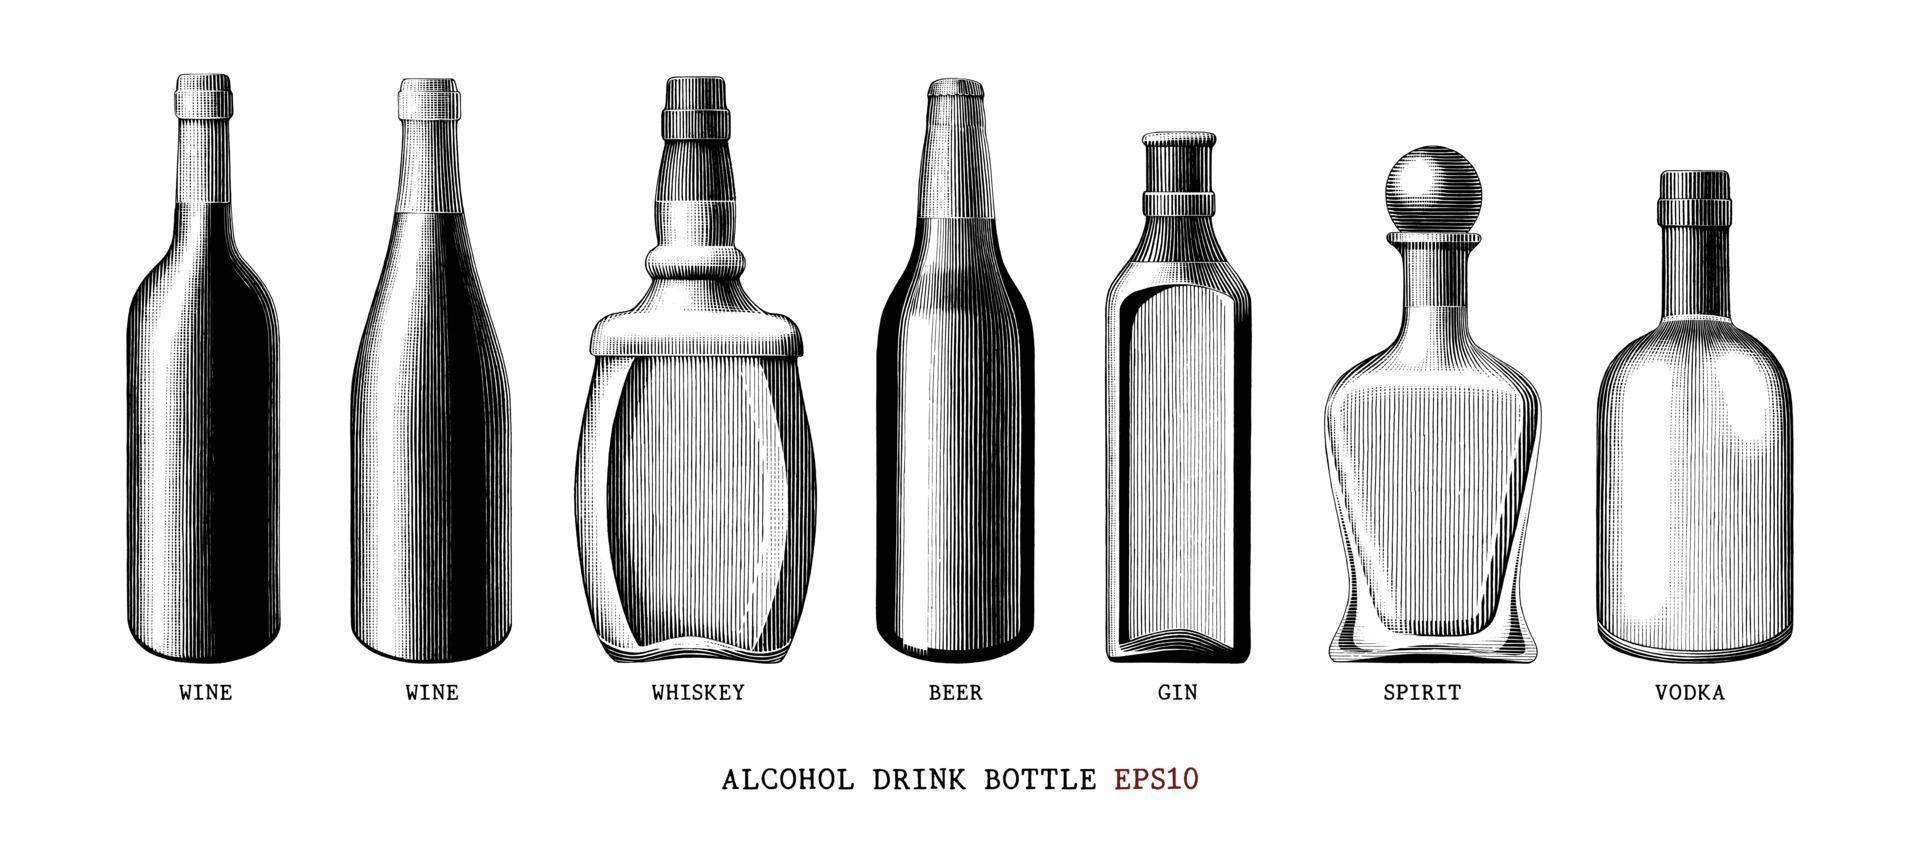 colección de botellas de bebida de alcohol dibujado a mano estilo vintage arte en blanco y negro aislado sobre fondo blanco vector